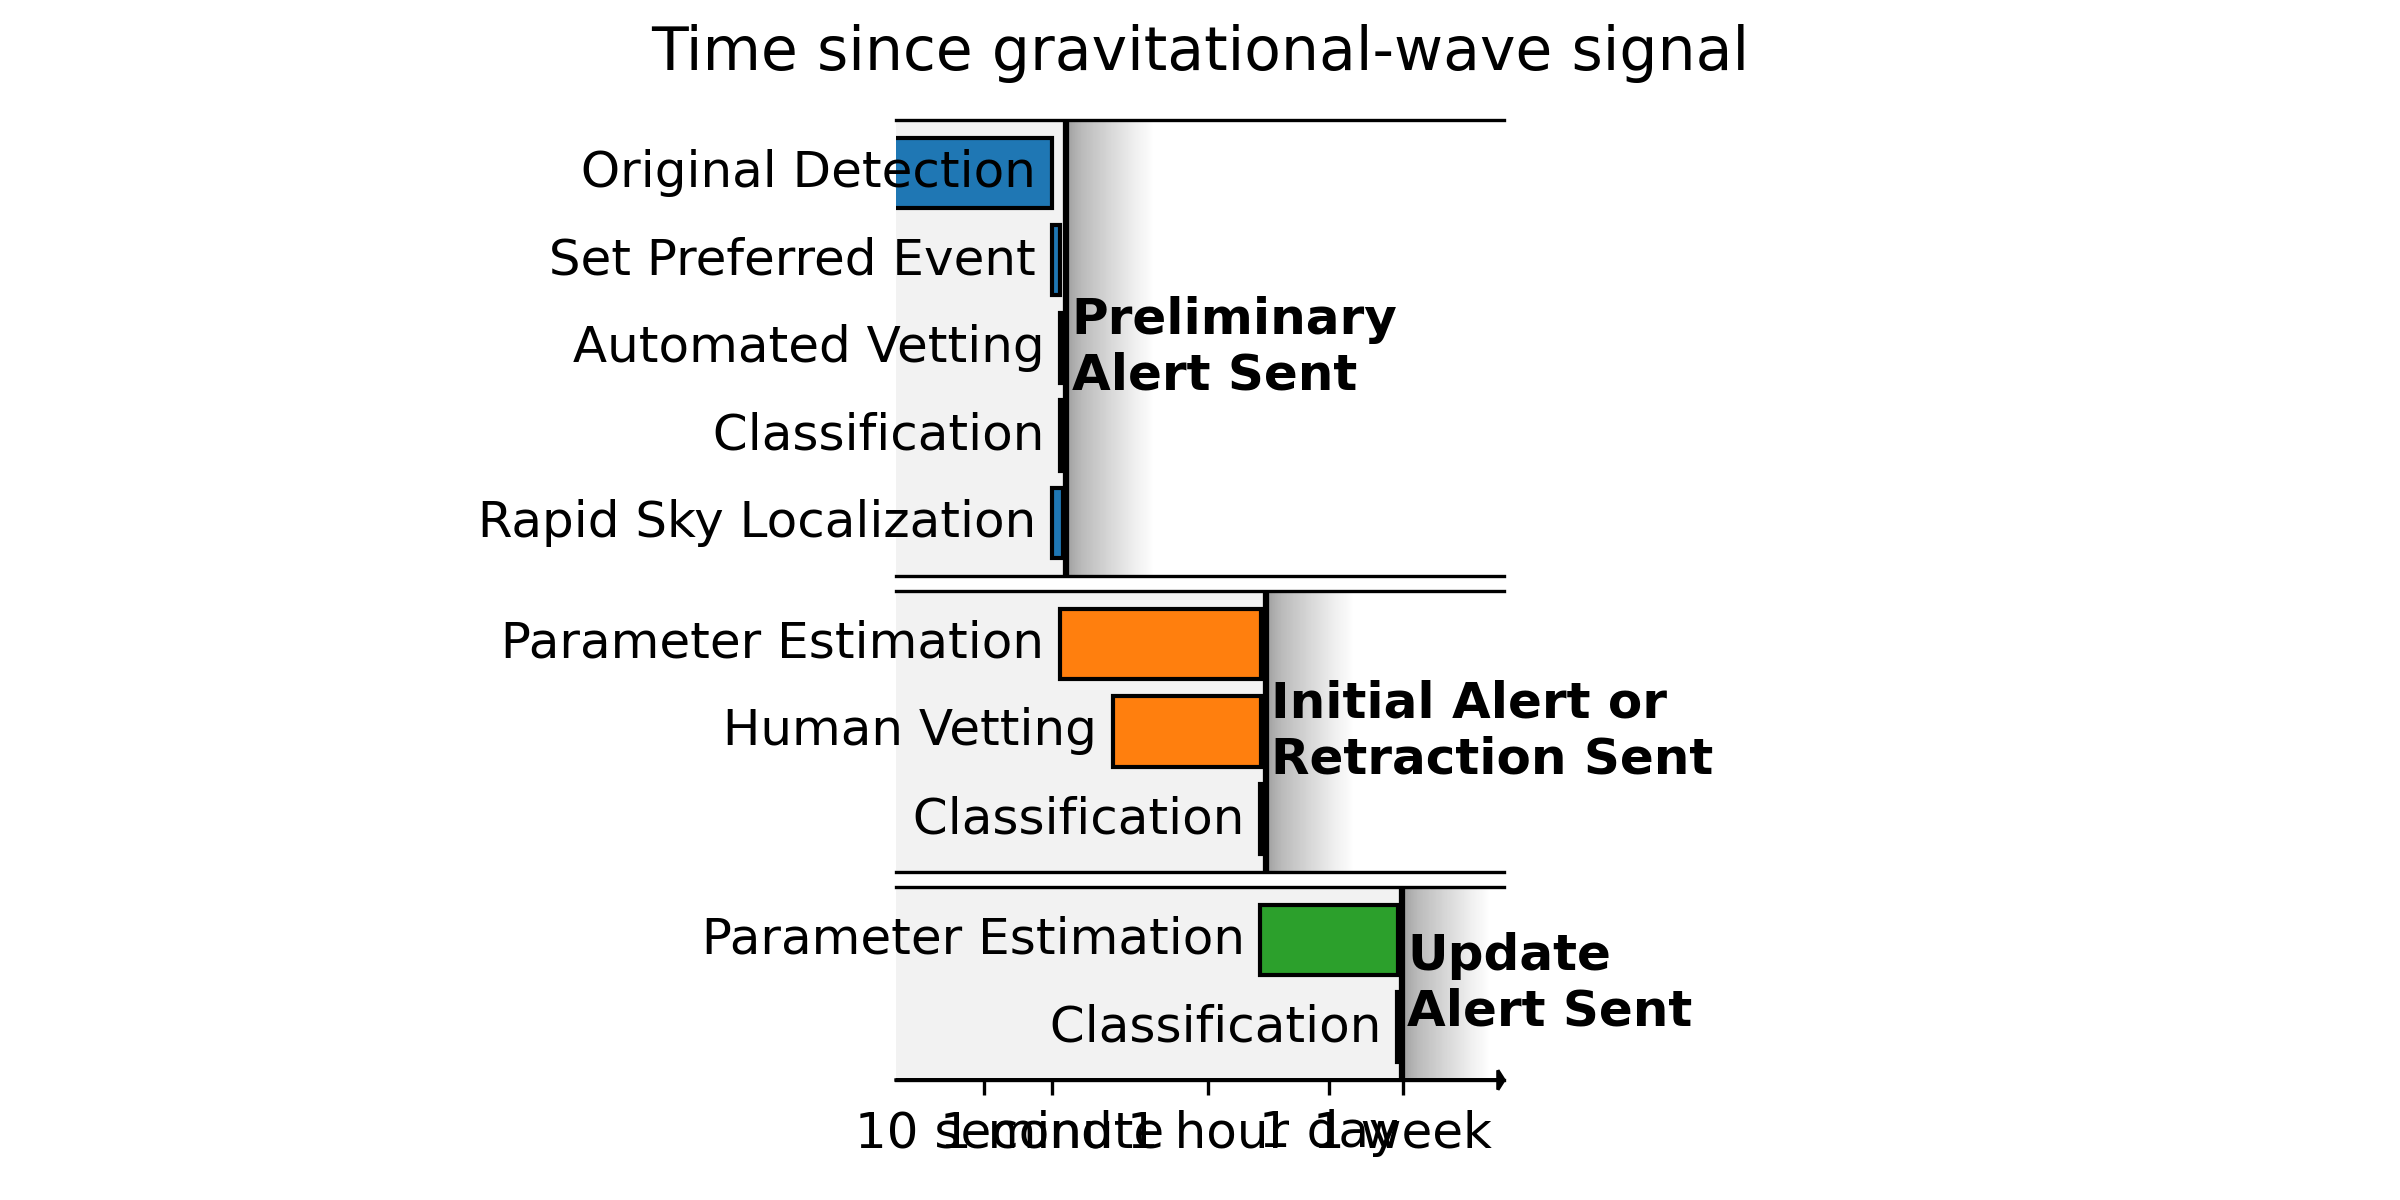 Timeline for sending gravitational-wave alerts